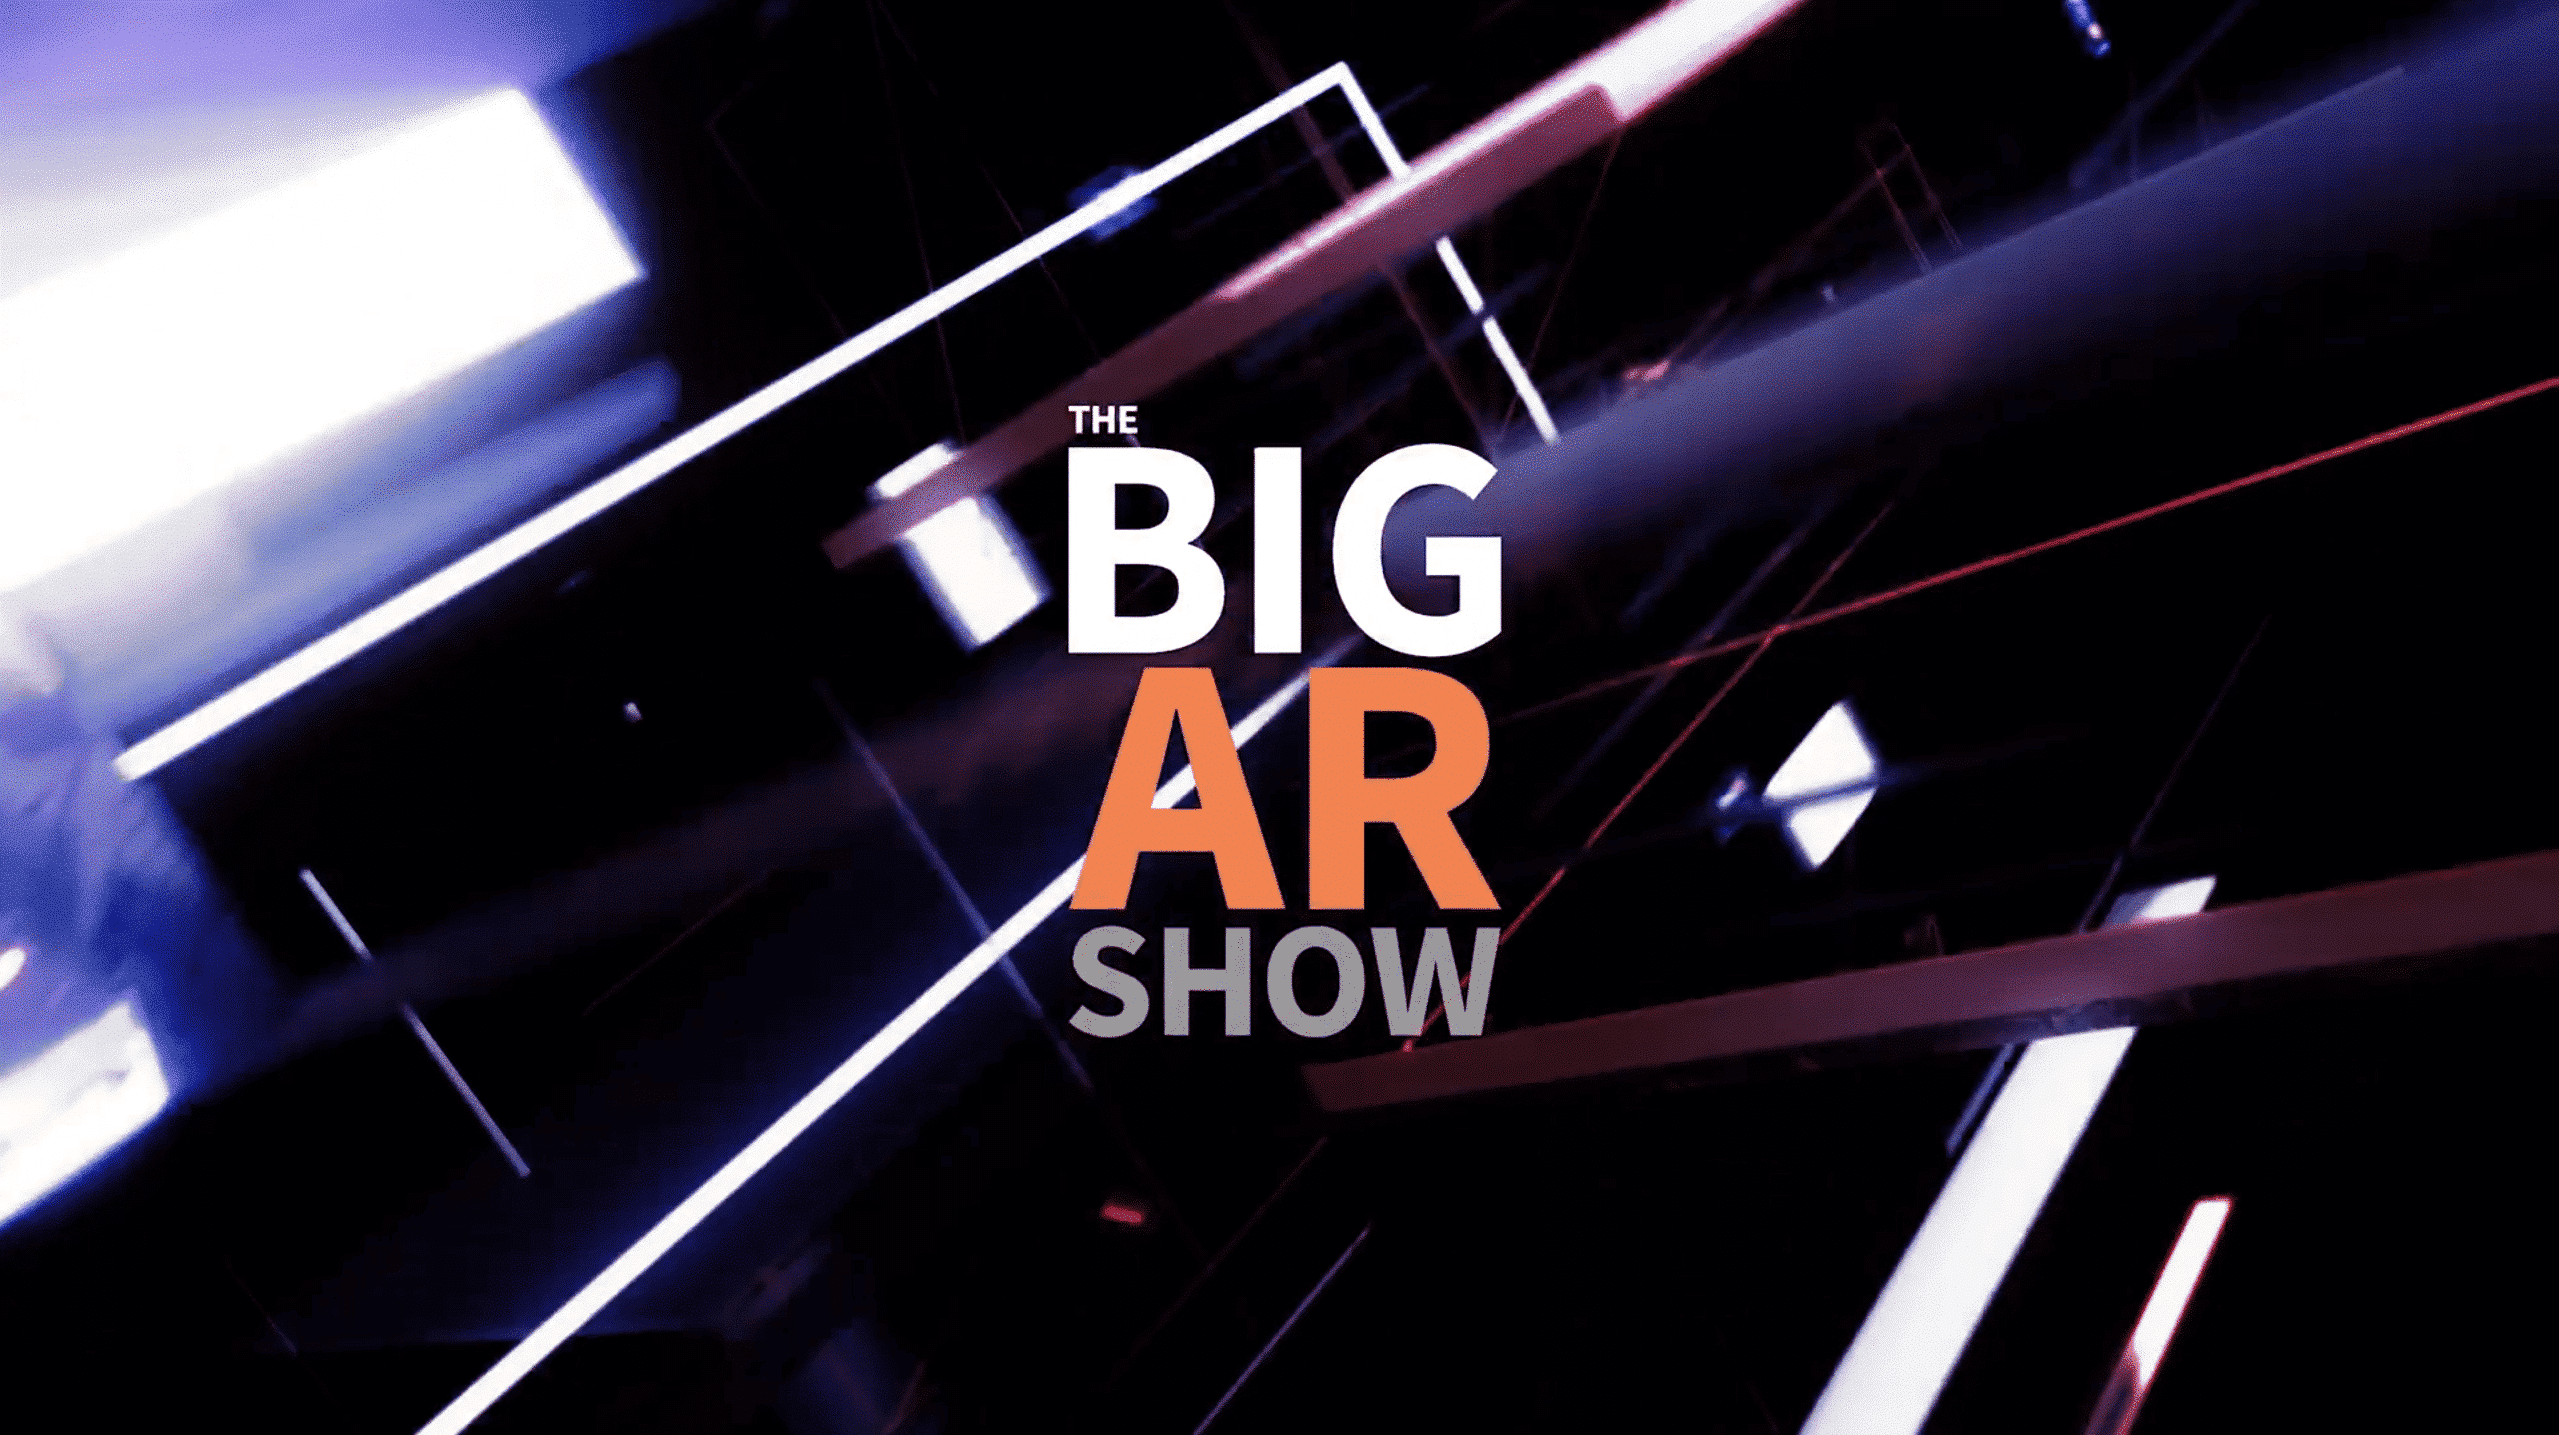 Big AR Show graphic